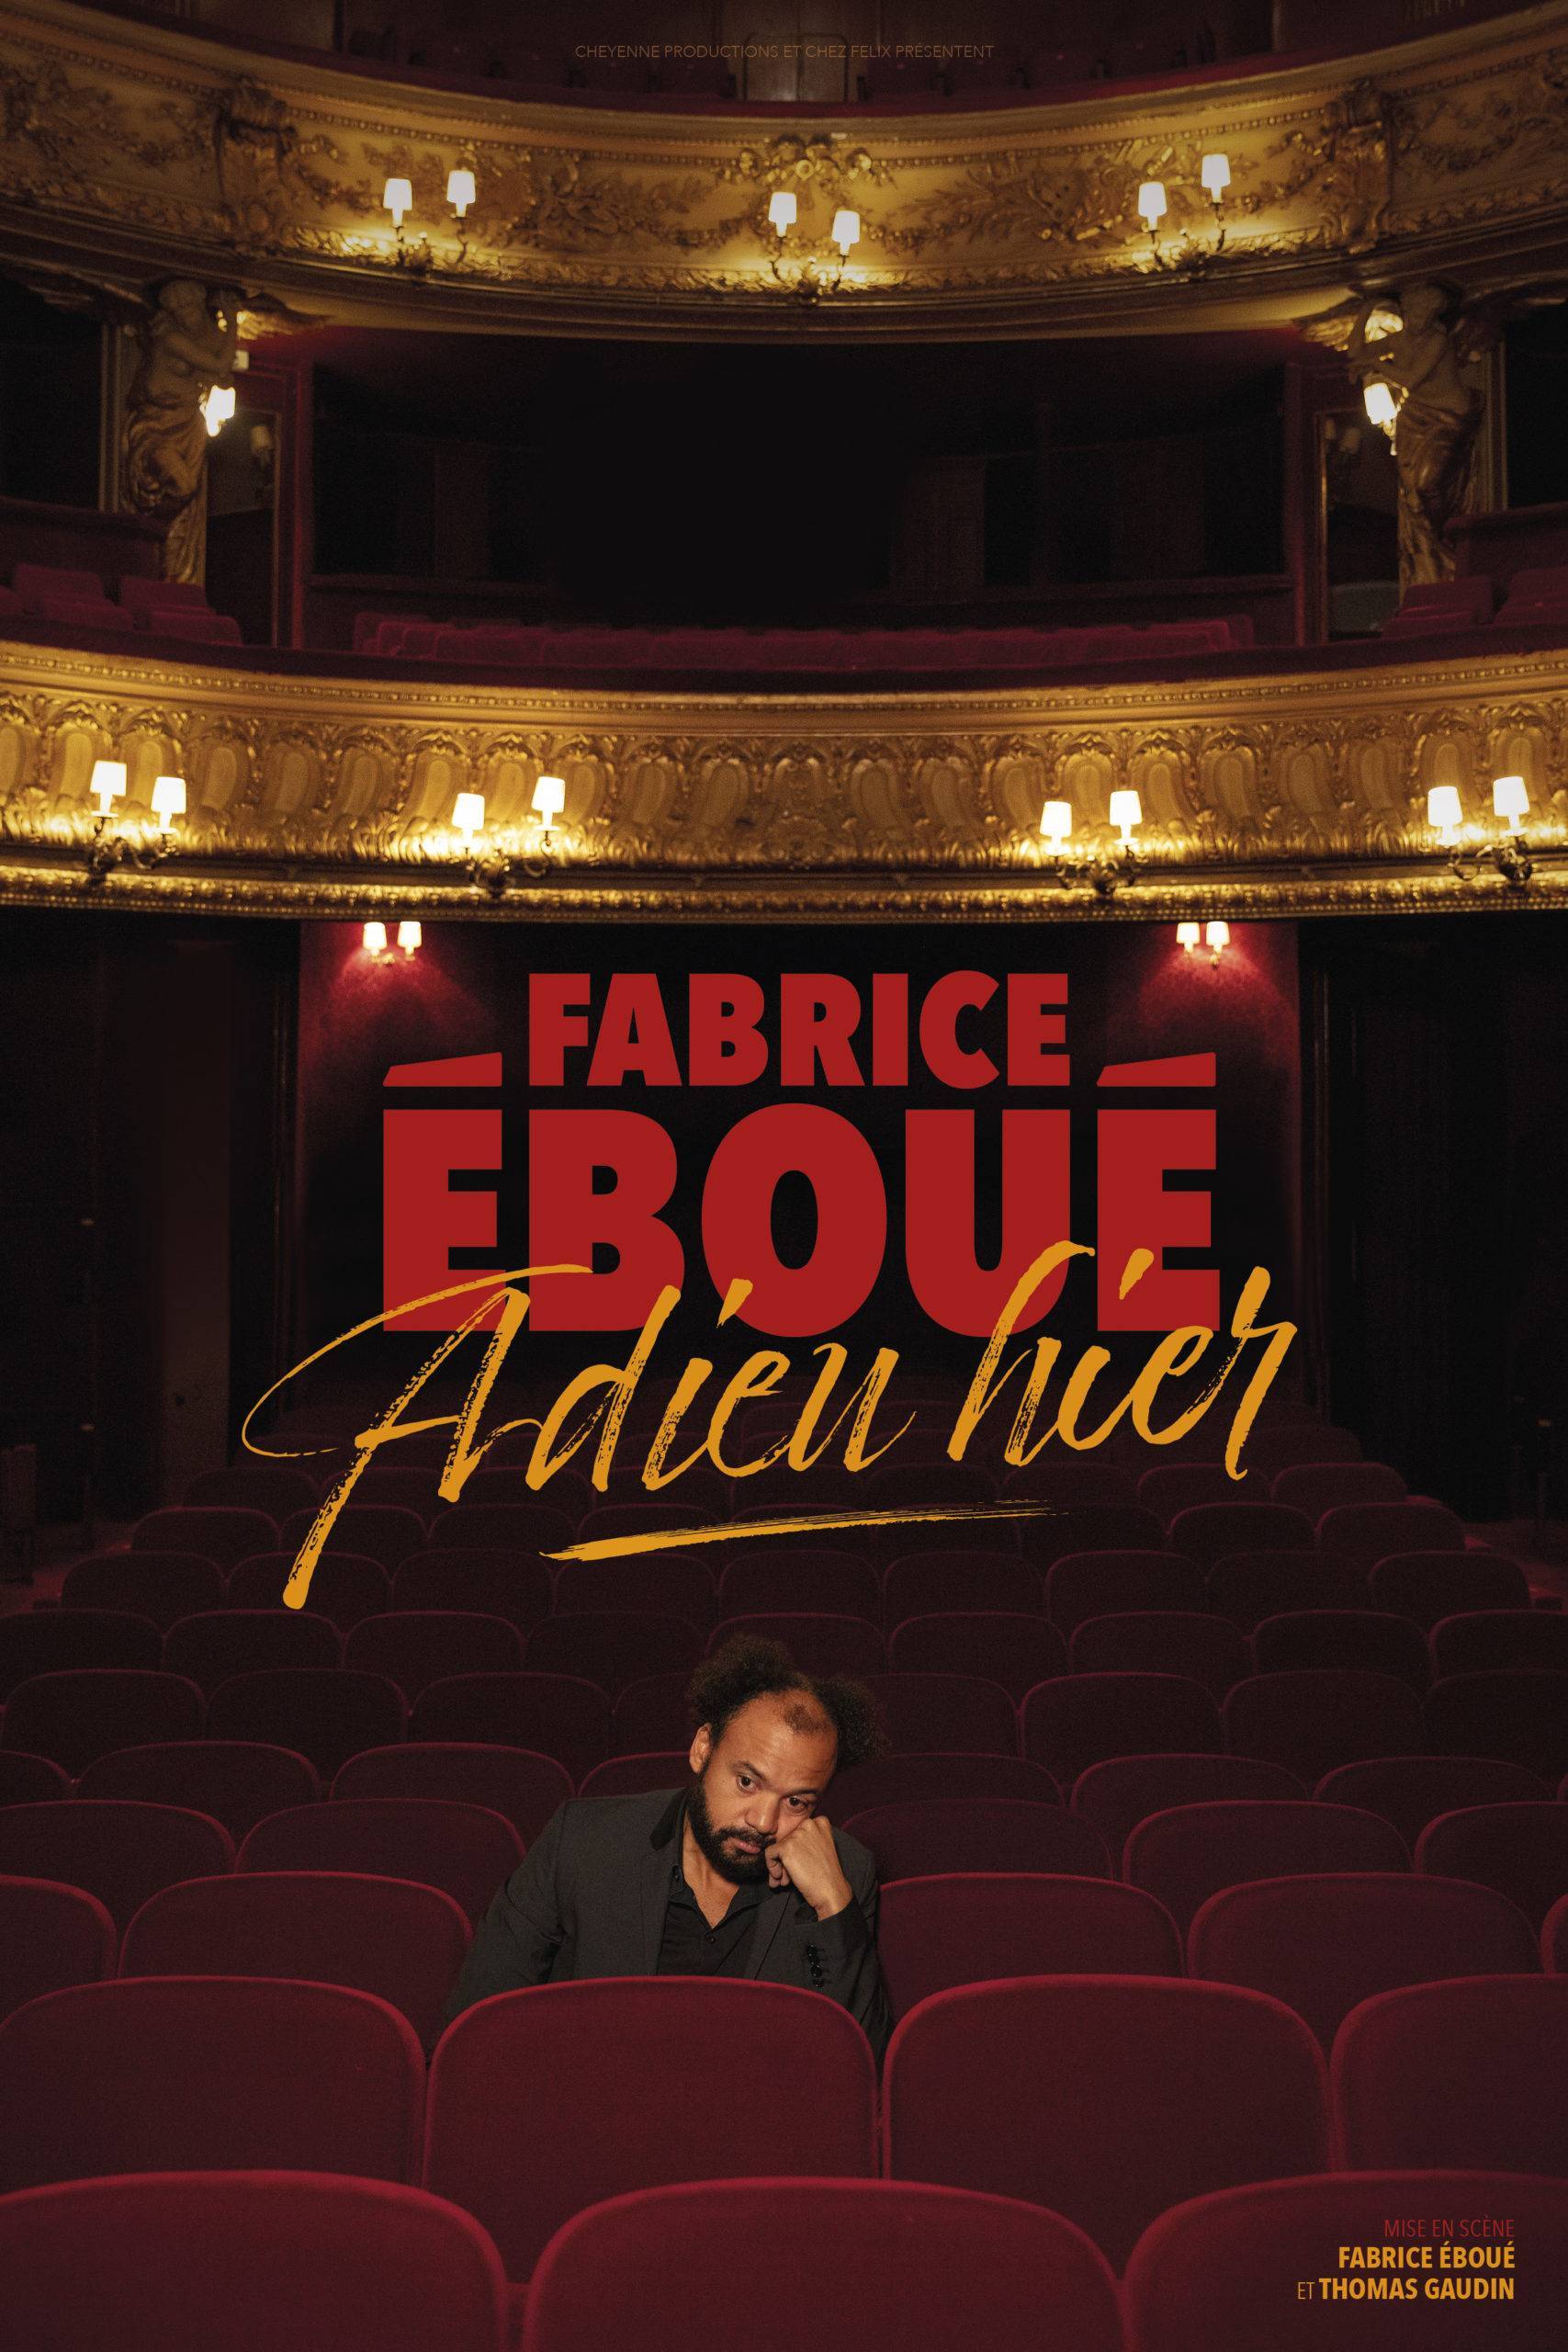 Fabrice Éboué - Le Kabaret - Tinqueux (51)